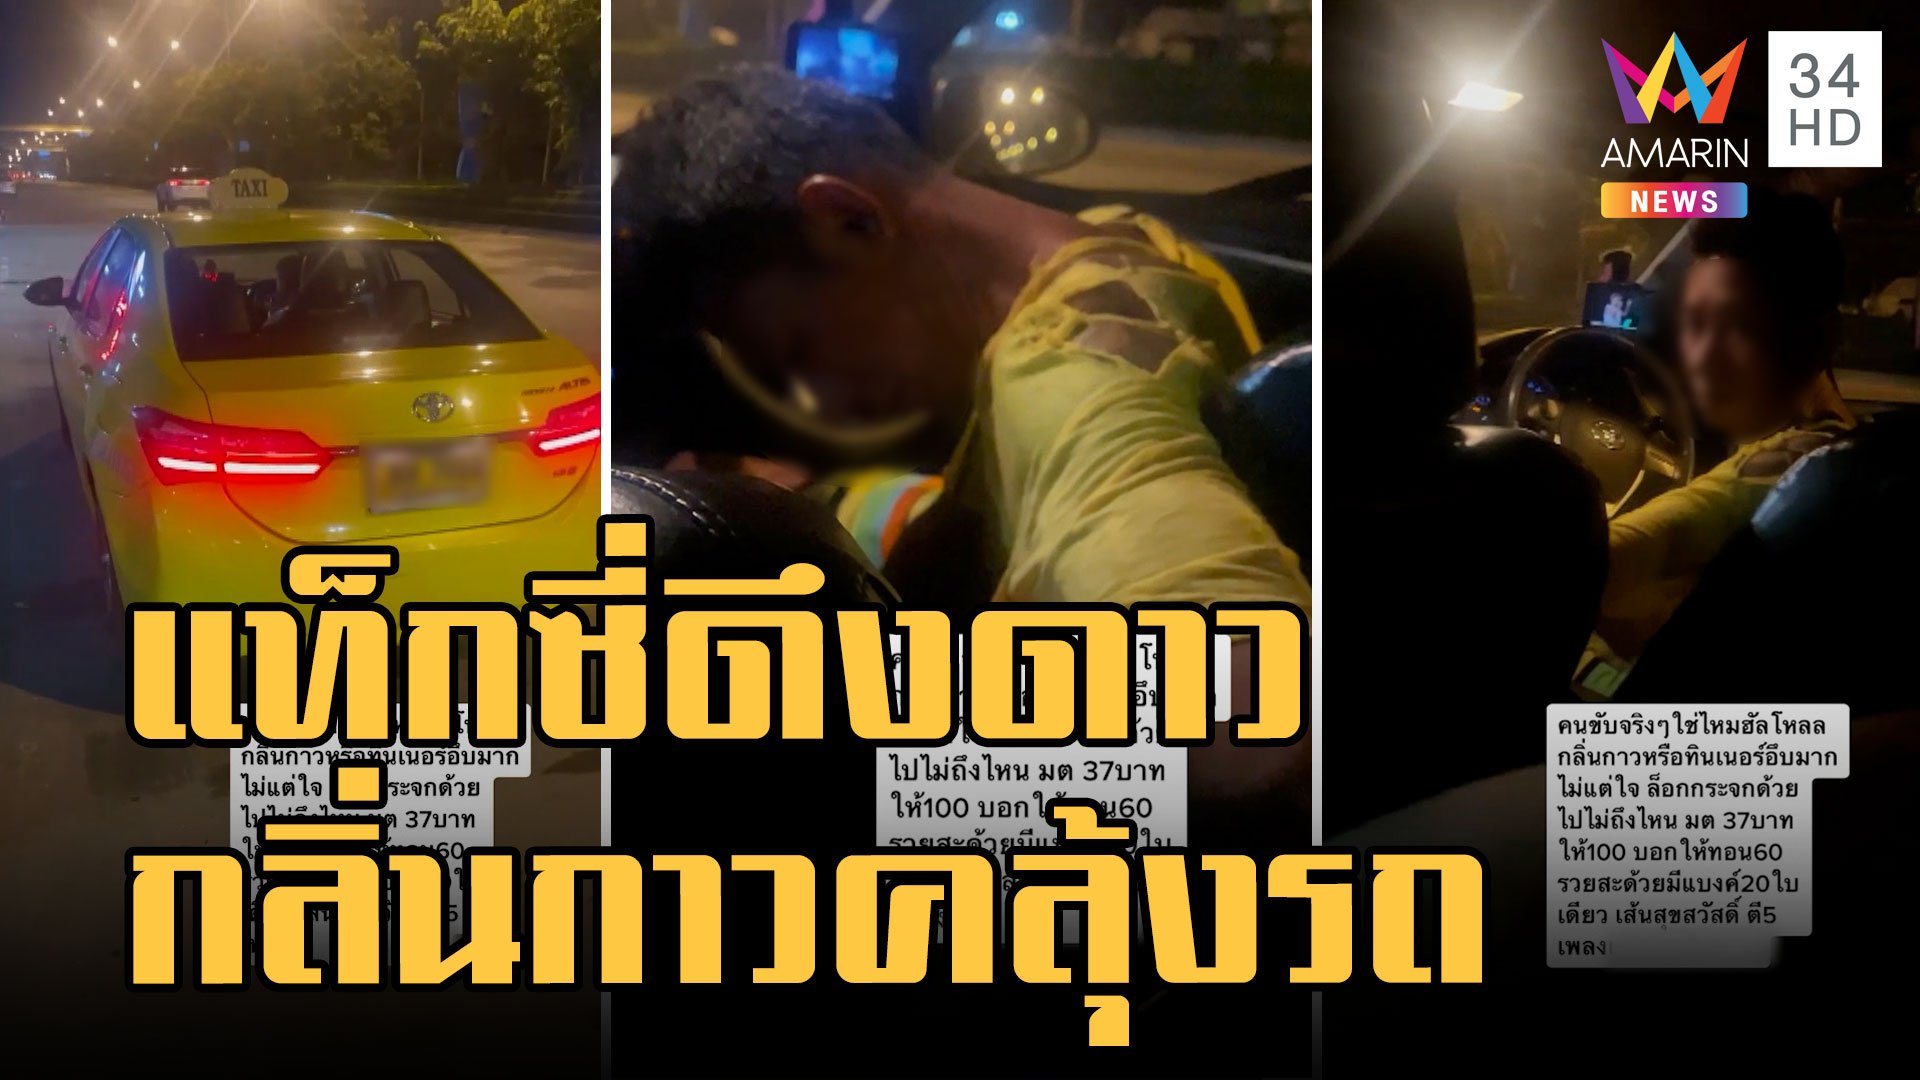 ผู้โดยสารผวาแท็กซี่ดึงดาวกลิ่นกาวคลุ้ง สวมเสื้อขาดต้องขอลงรถ | ข่าวอรุณอมรินทร์ | 24 พ.ย. 65 | AMARIN TVHD34